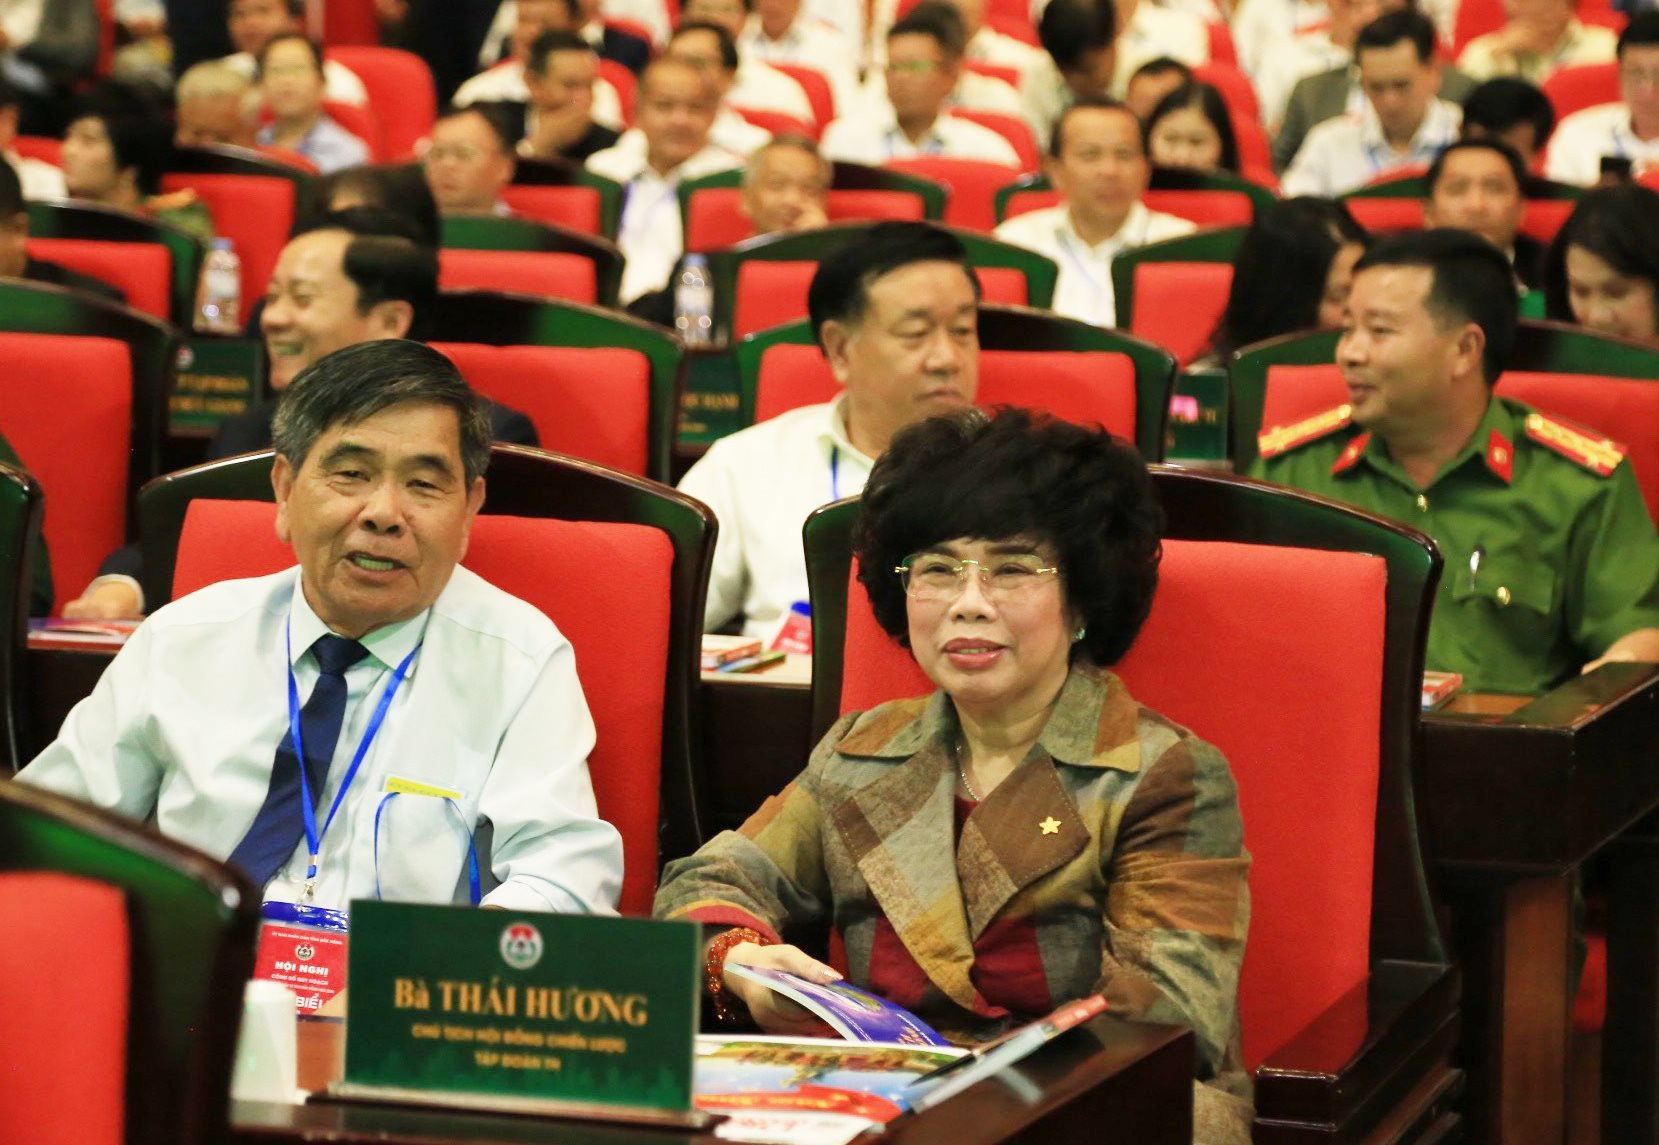 Bà Thái Hương, Chủ tịch Tập đoàn TH đến dự Hội nghị công bố quy hoạch tỉnh Đắk Nông thời kỳ 2021-2030, tầm nhìn đến năm 2050 và xúc tiến đầu tư tỉnh Đắk Nông 2024. Tập đoàn TH là một trong những nhà đầu tư lớn của Đắk Nông hiện nay